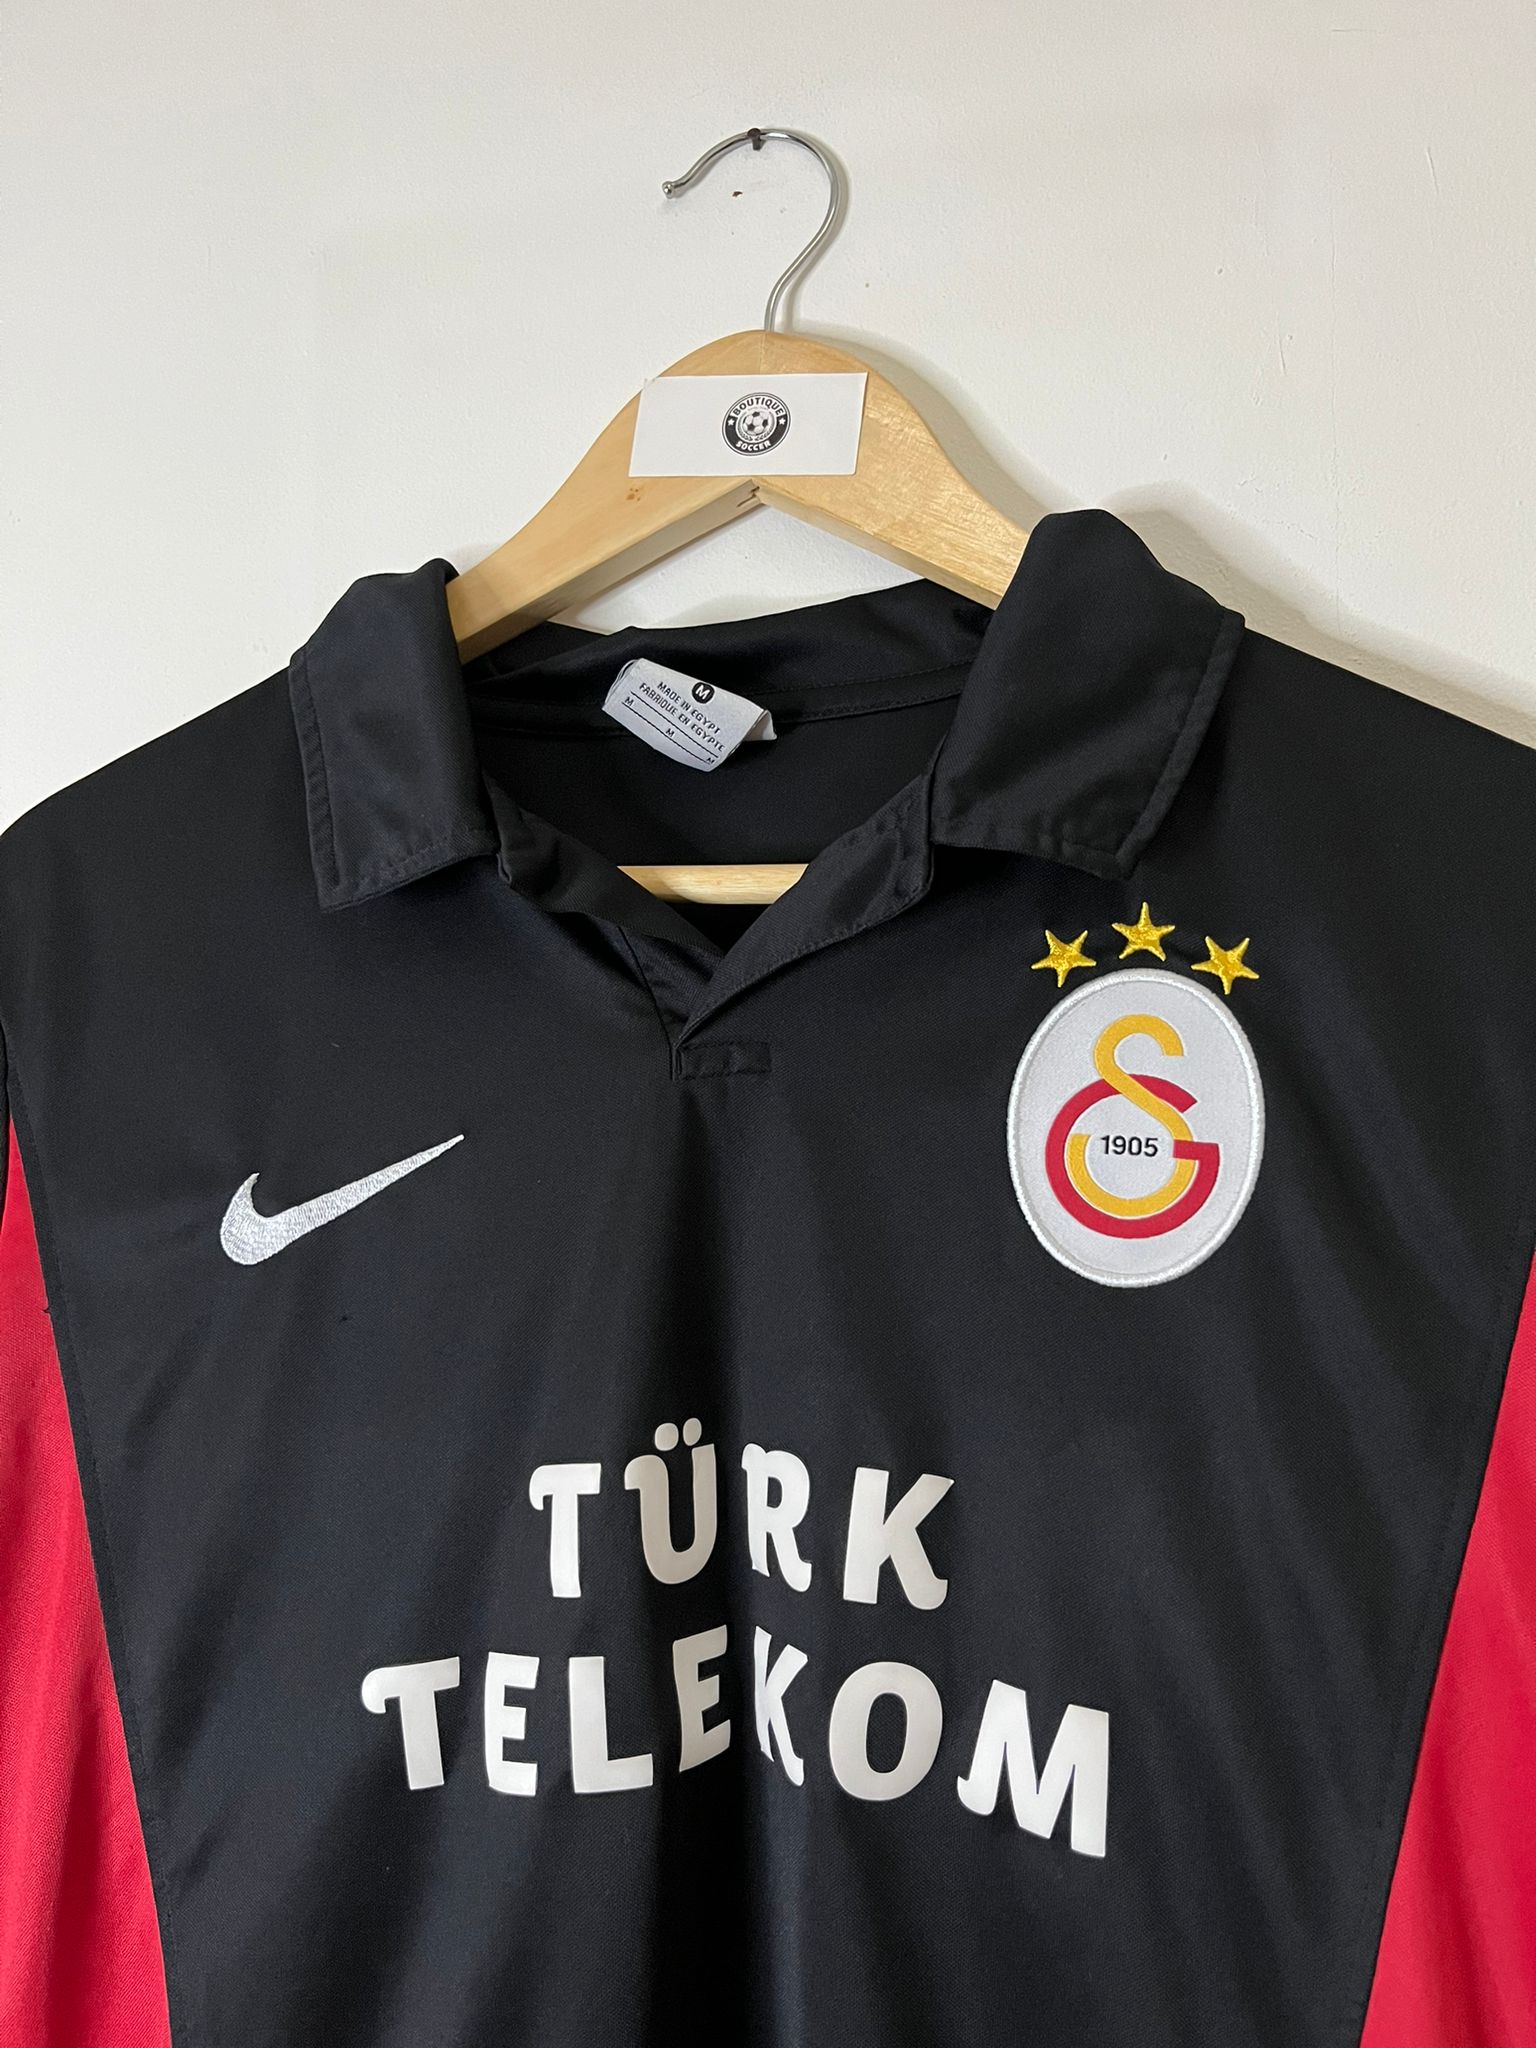 Galatasaray shirt